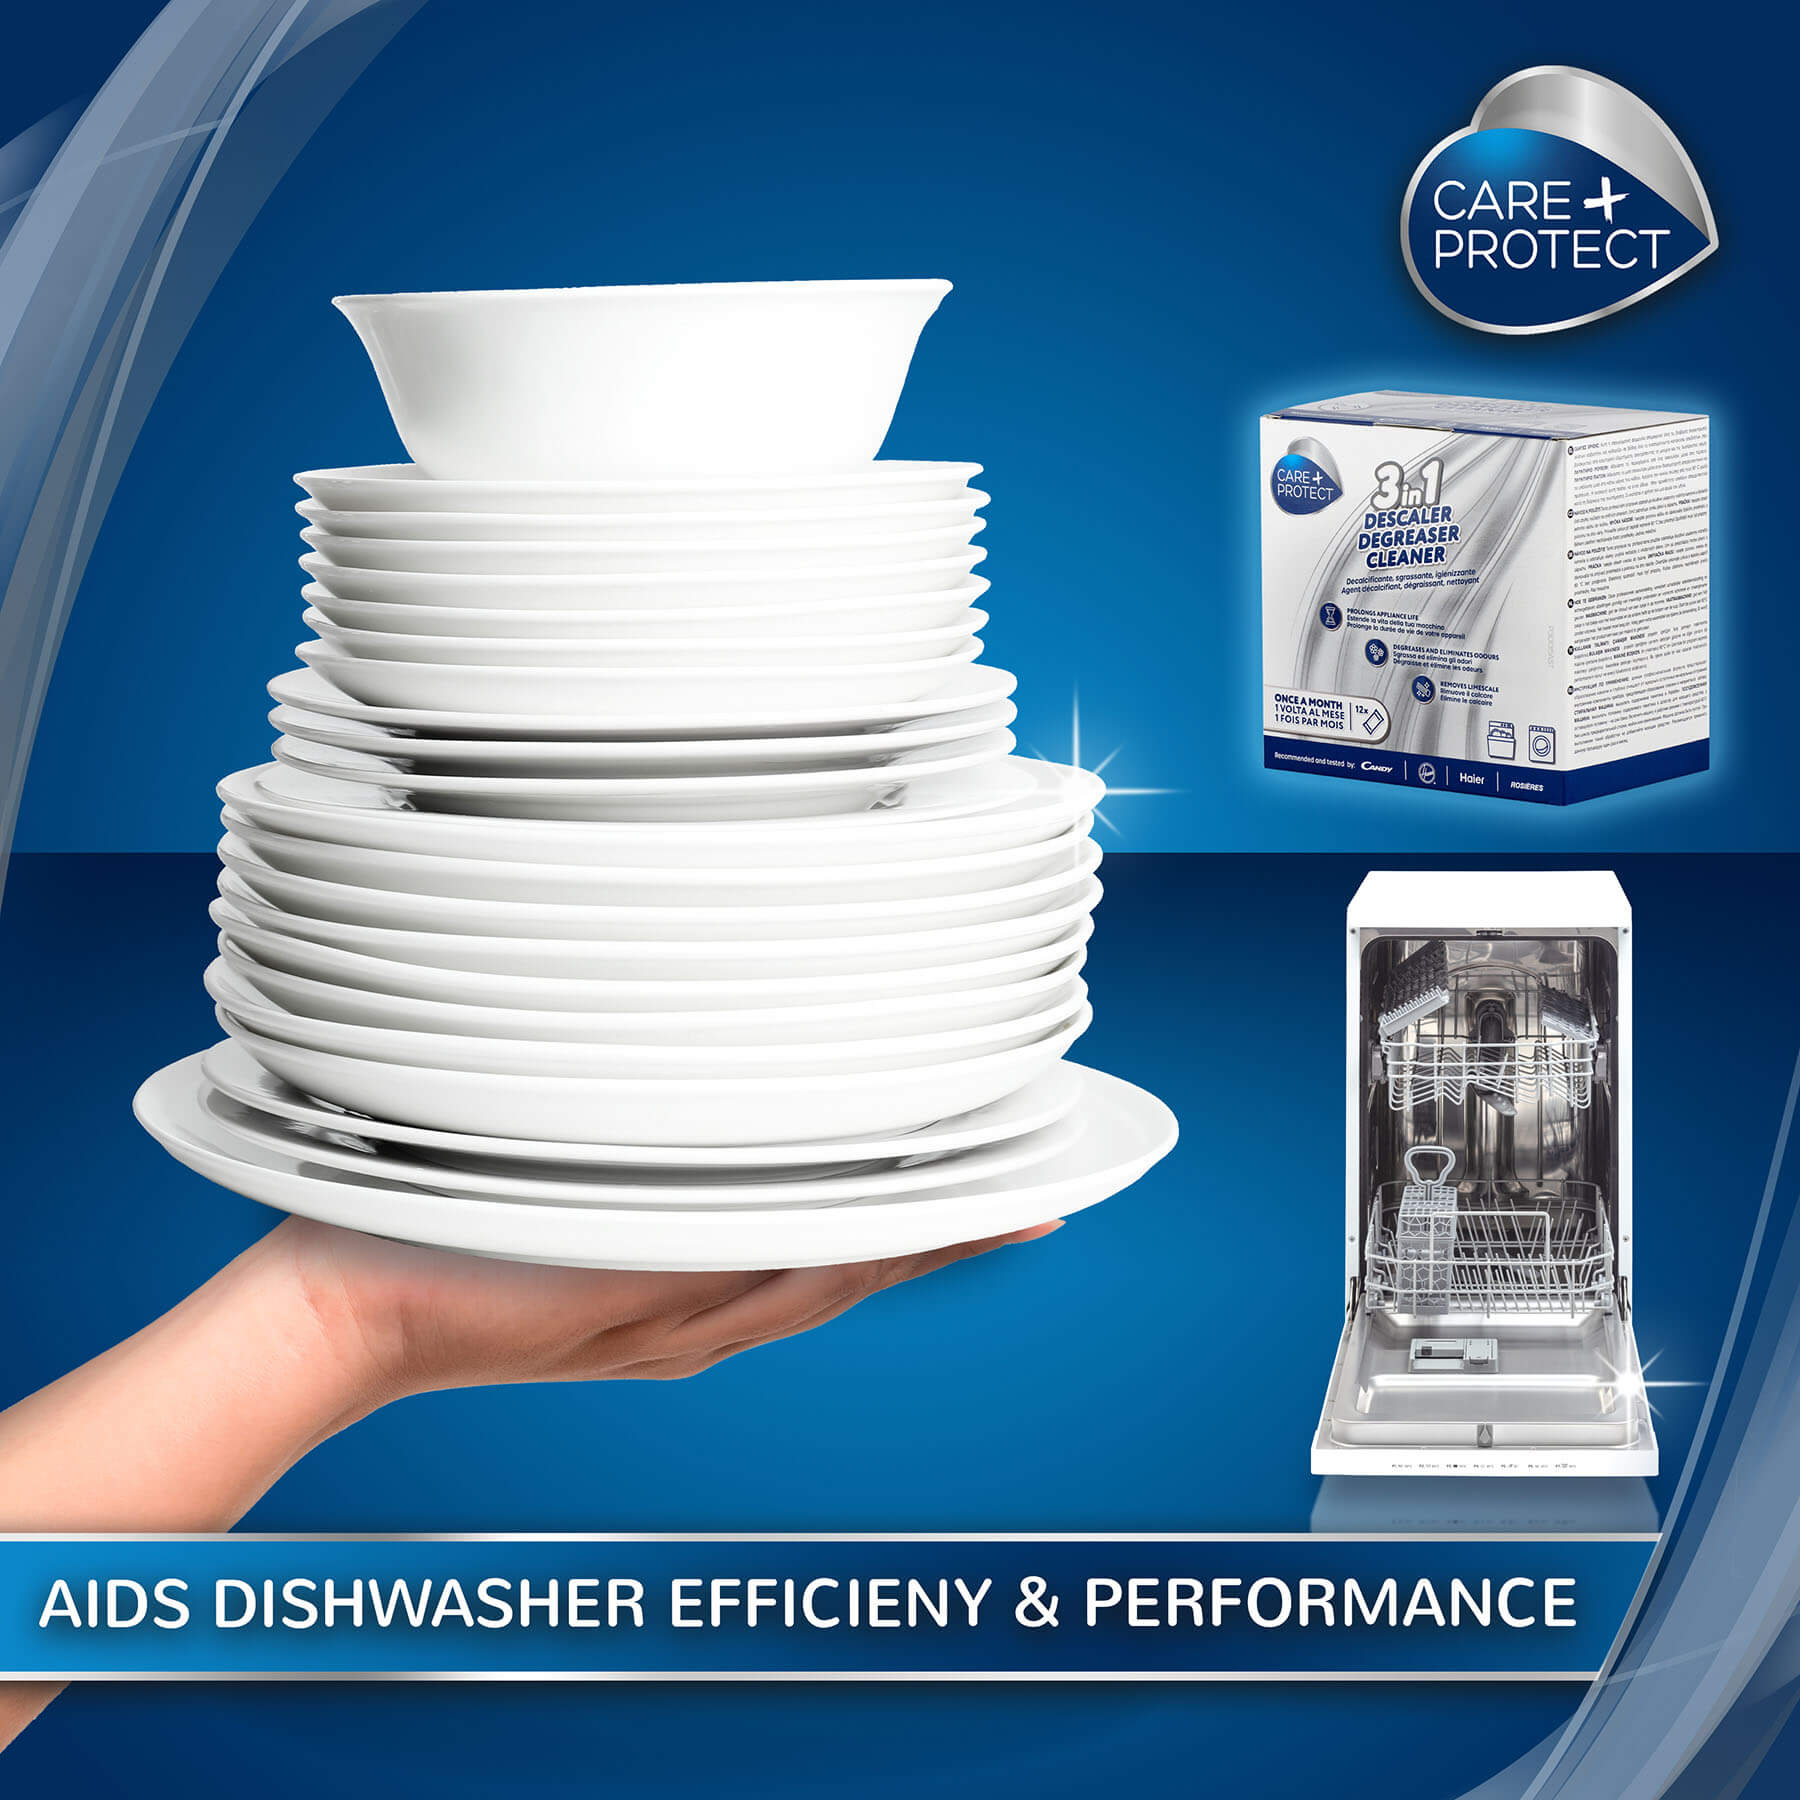 Adis Dishwasher Efficieny & Performance